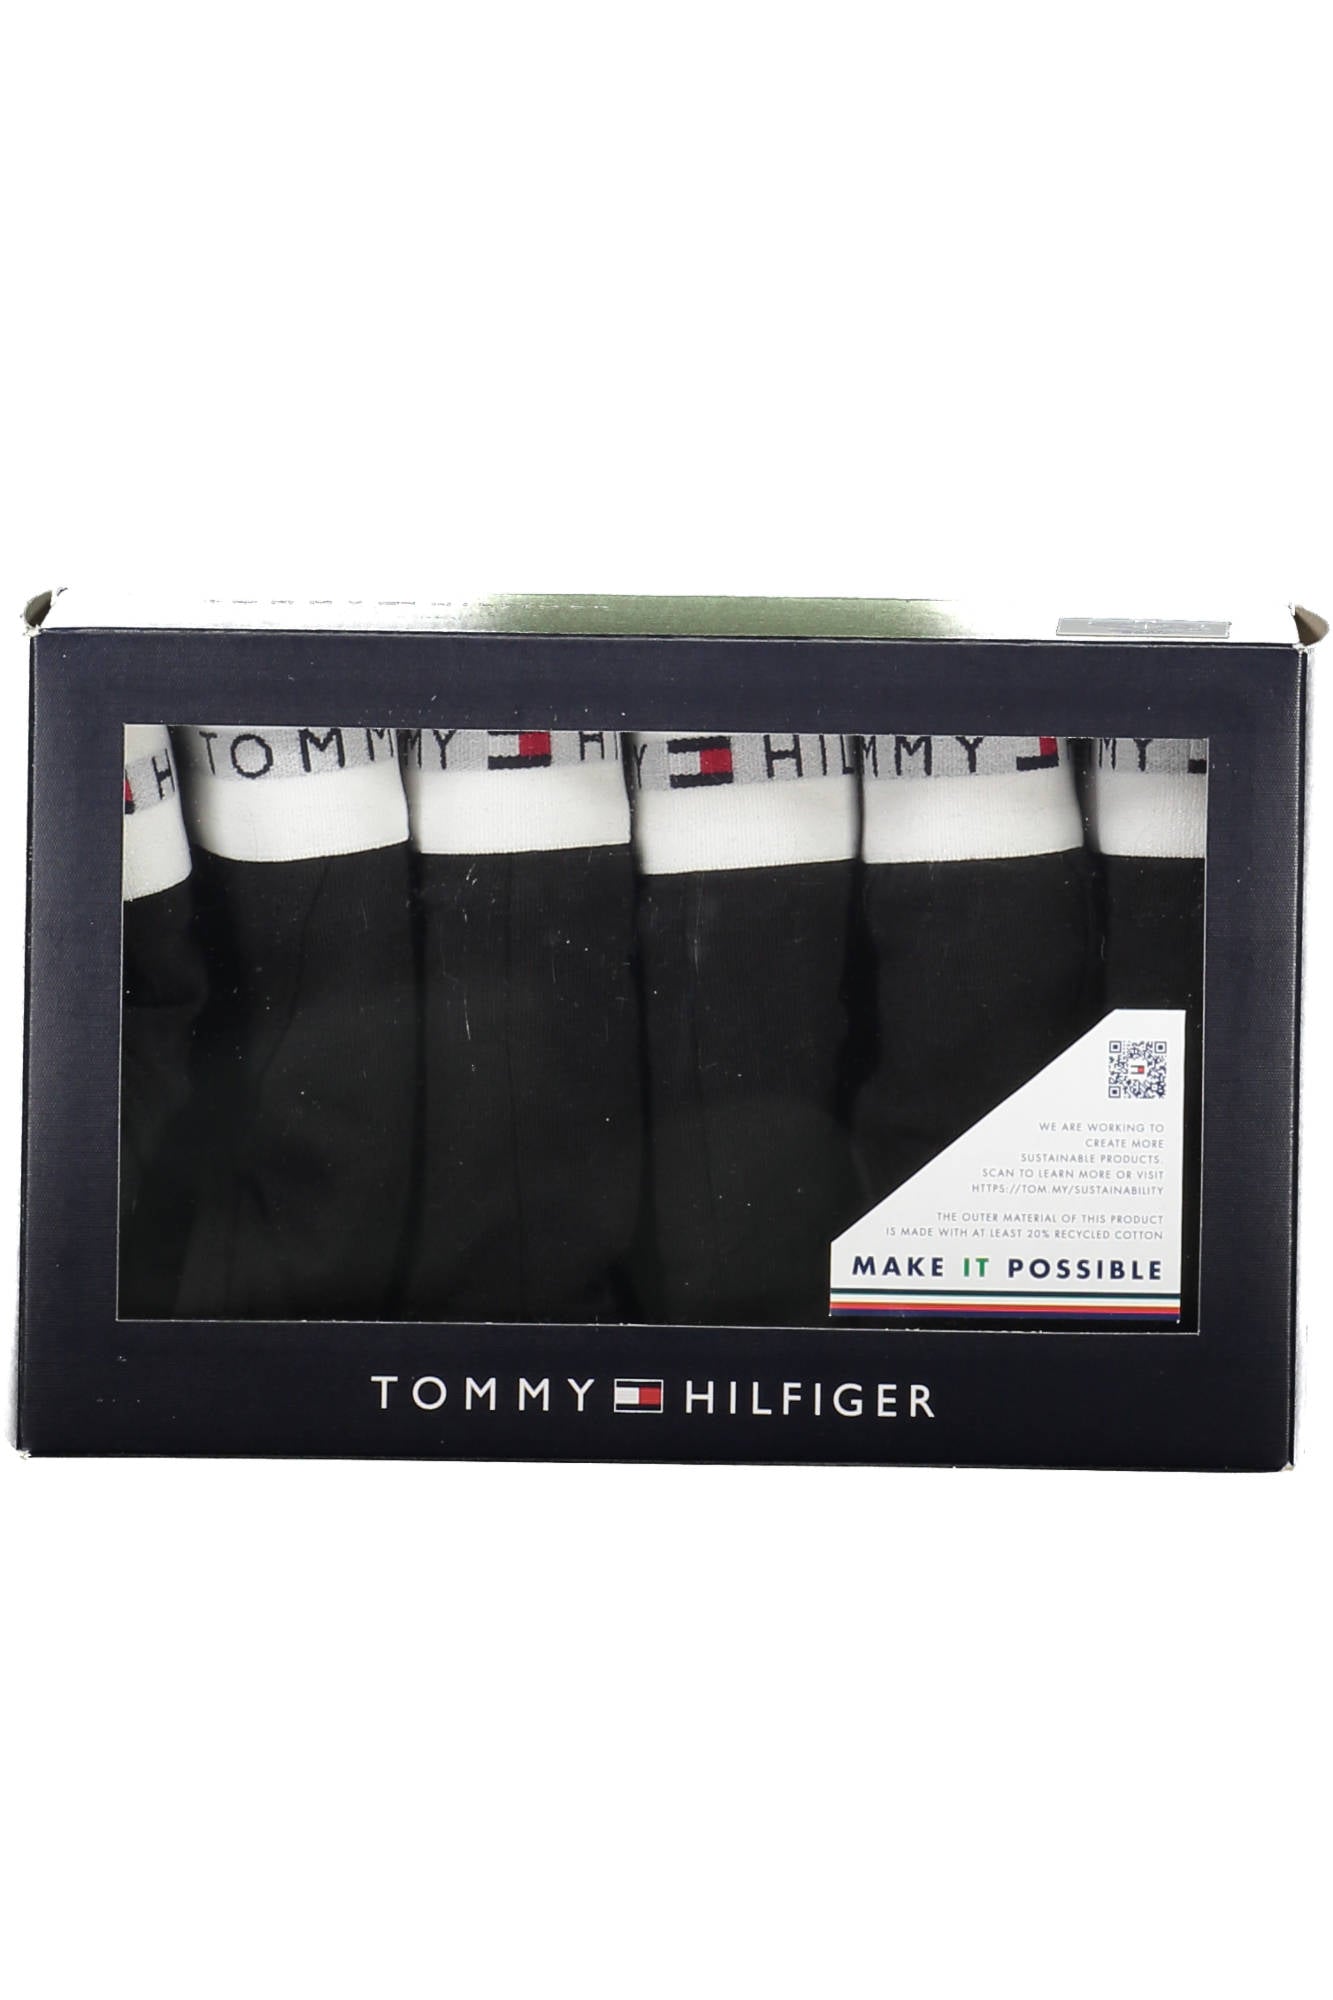 Tommy Hilfiger Black Underwear - Fizigo